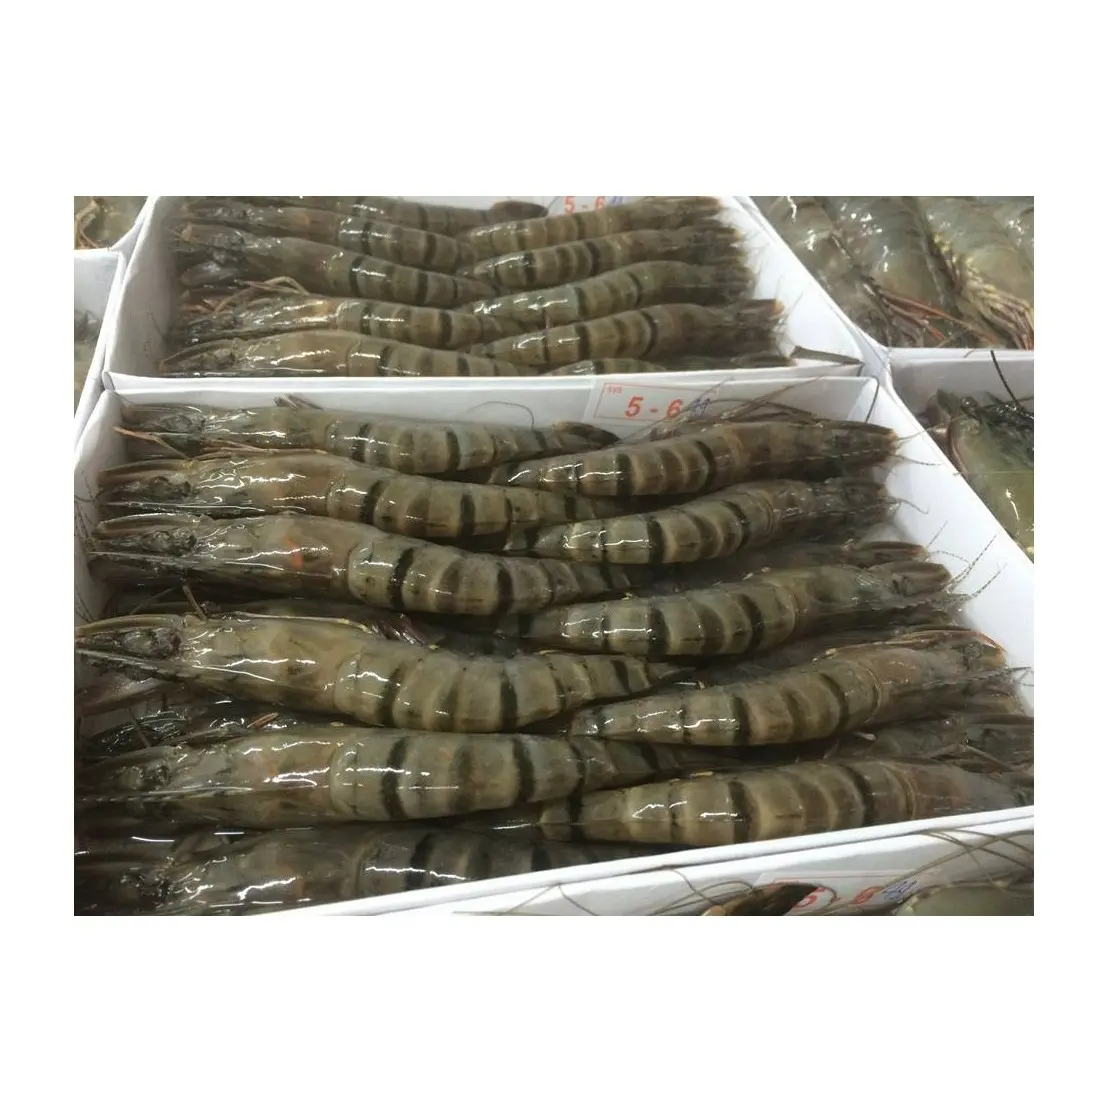 Vente en gros au Vietnam de crevettes tigrées noires PD crues, fruits de mer frais, crevettes pelées de haute qualité, crevettes tigrées noires